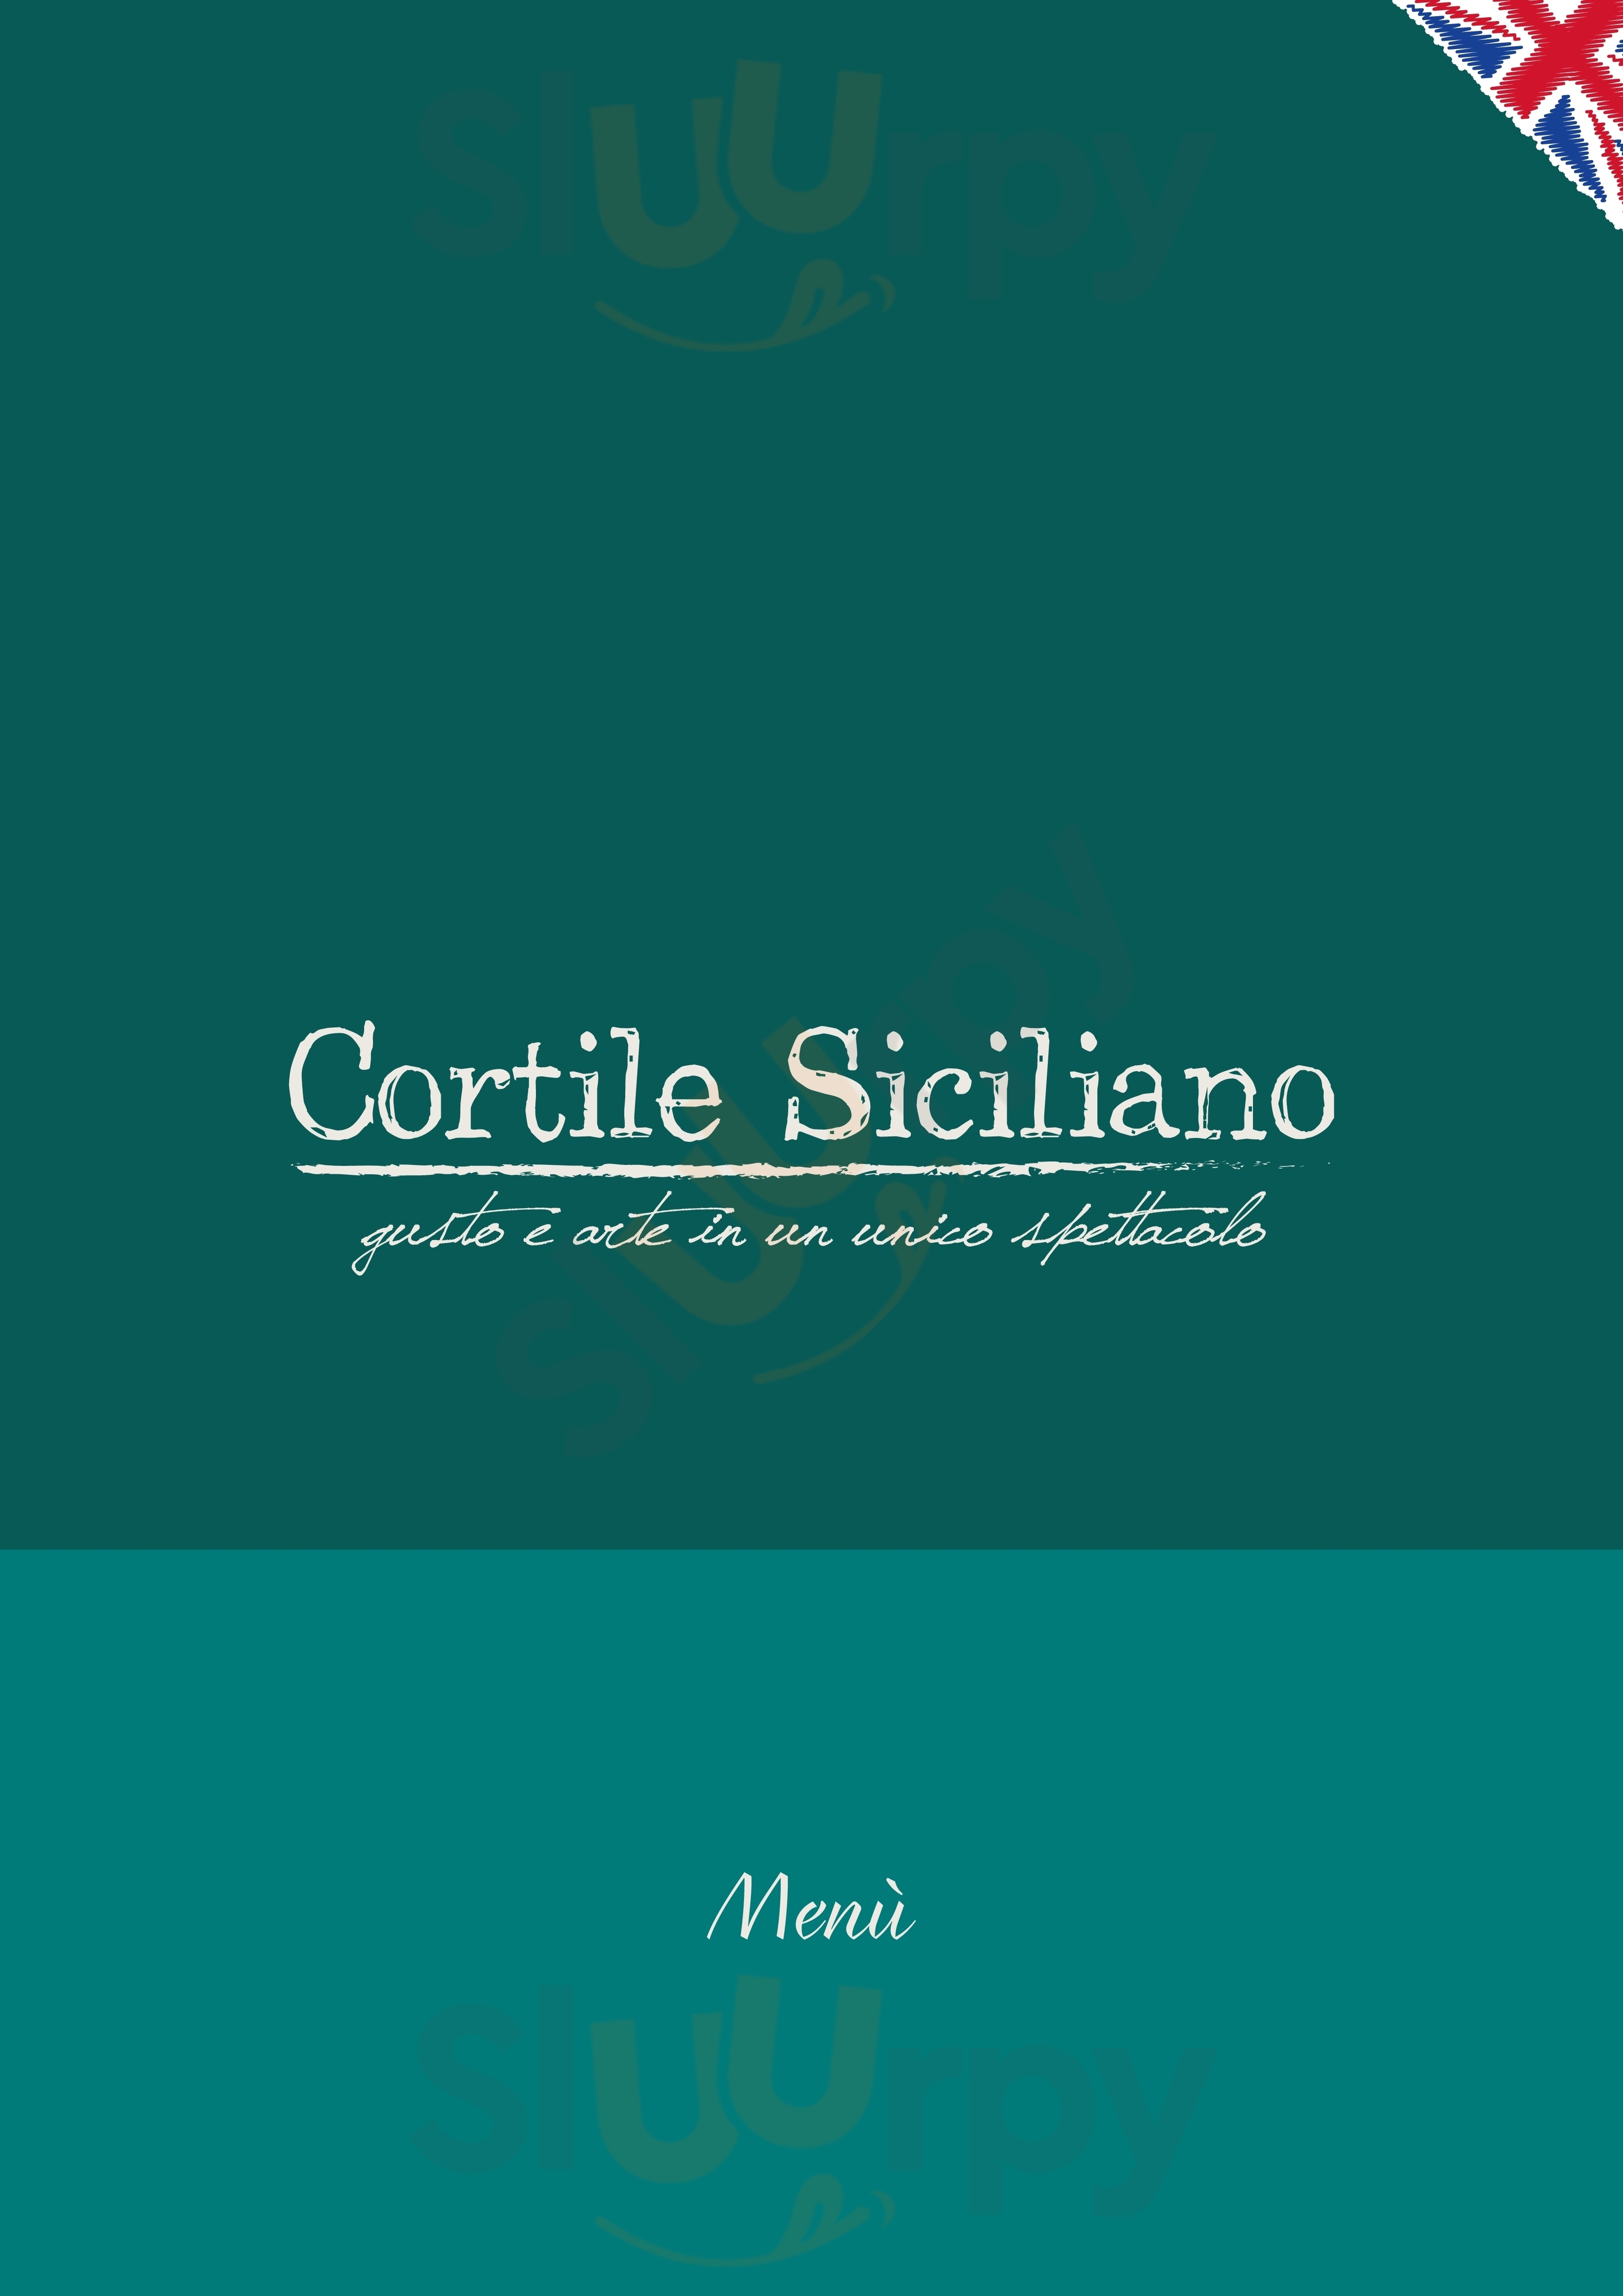 Cortile Siciliano Tremestieri Etneo menù 1 pagina